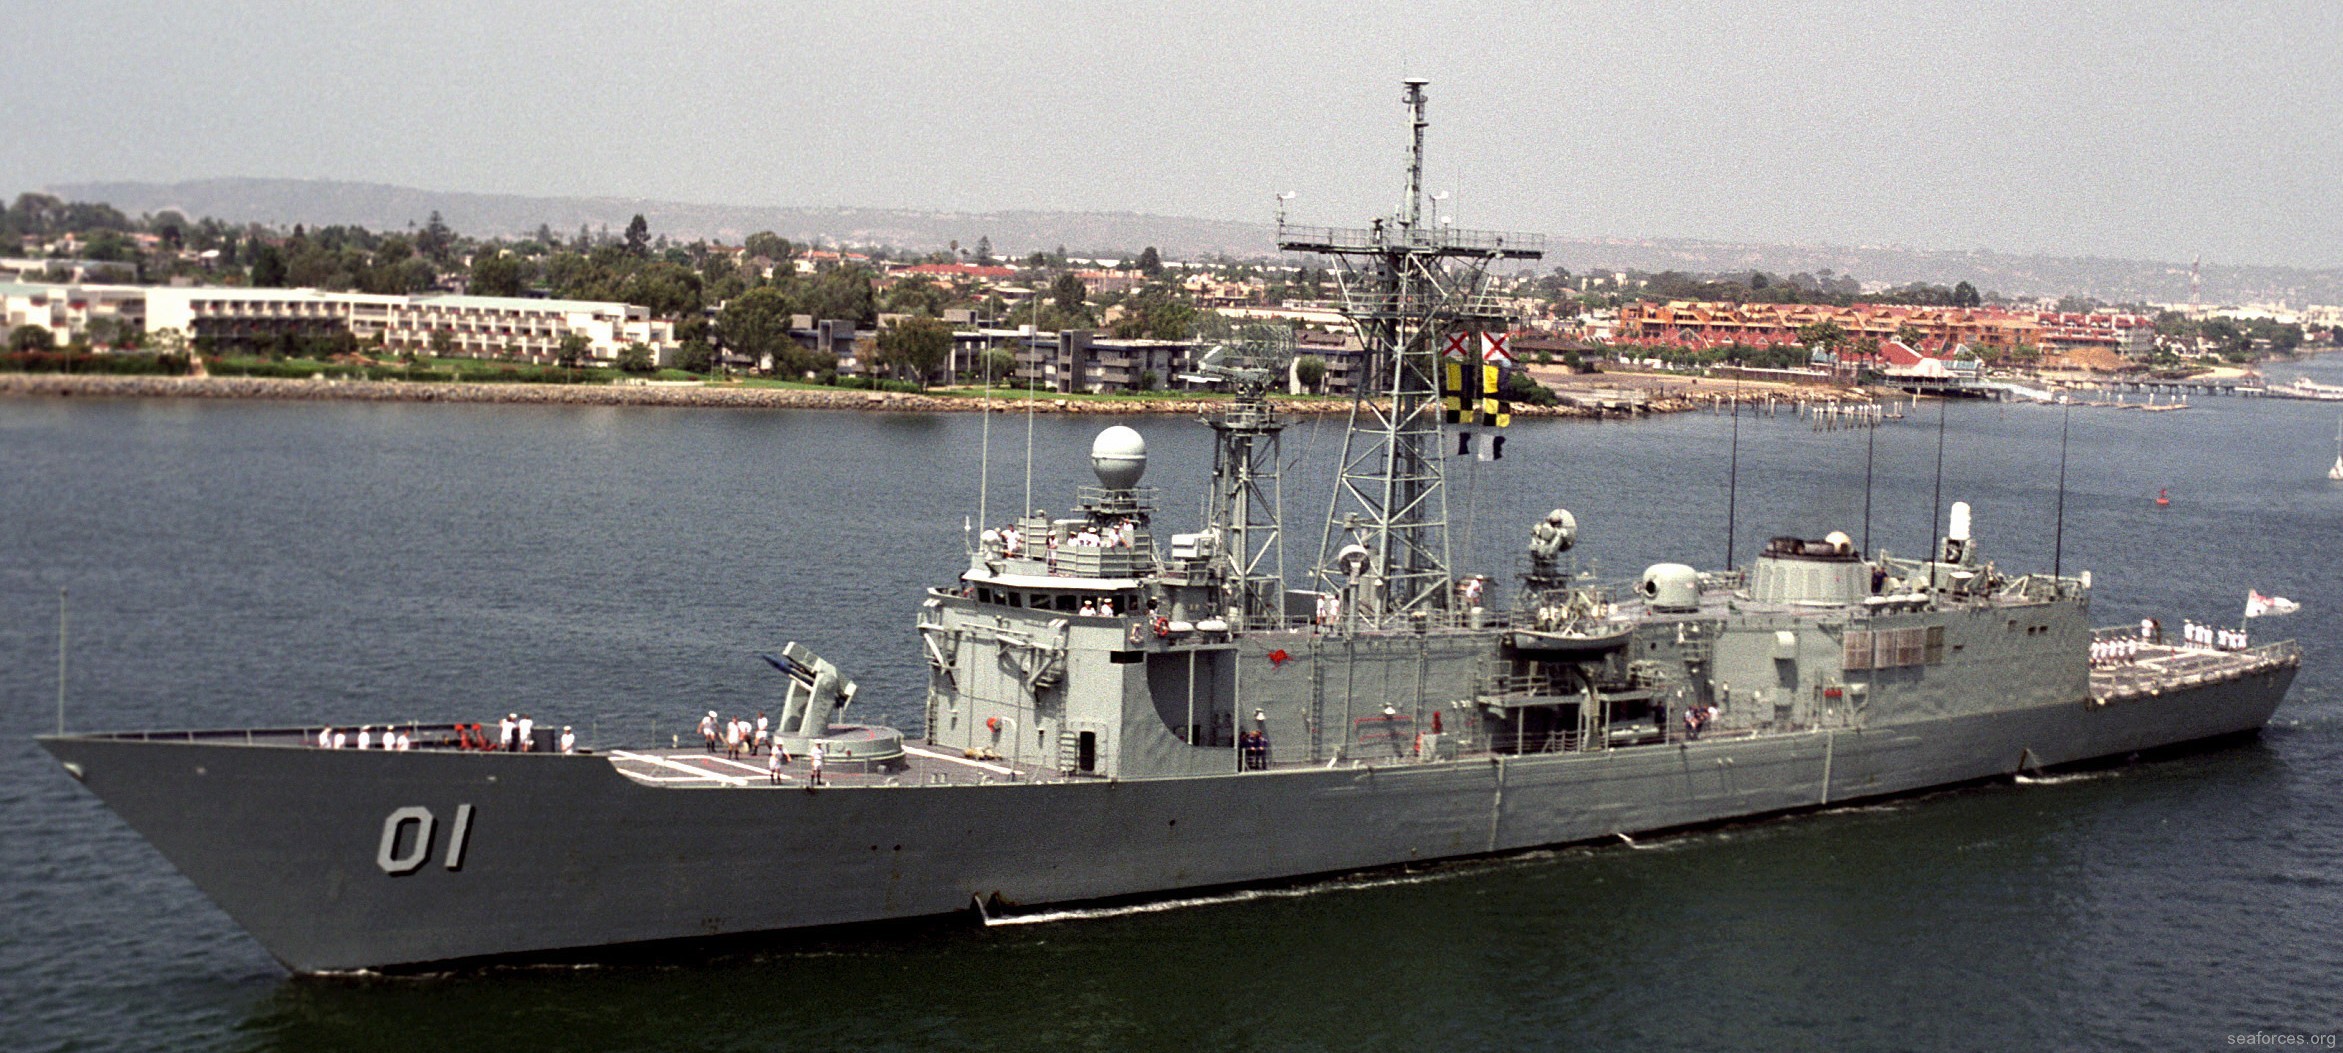 hmas adelaide ffg-01 guided missile frigate royal australian navy